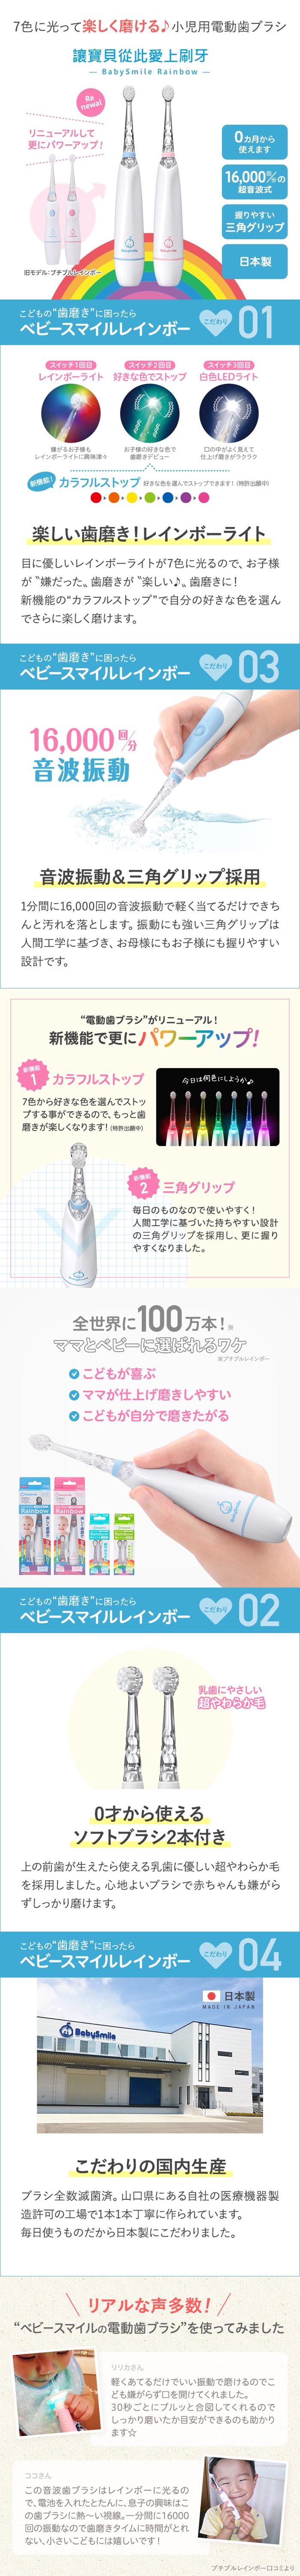 日本BabySmlie-炫彩變色兒童電動牙刷(藍色/粉色)JS-204